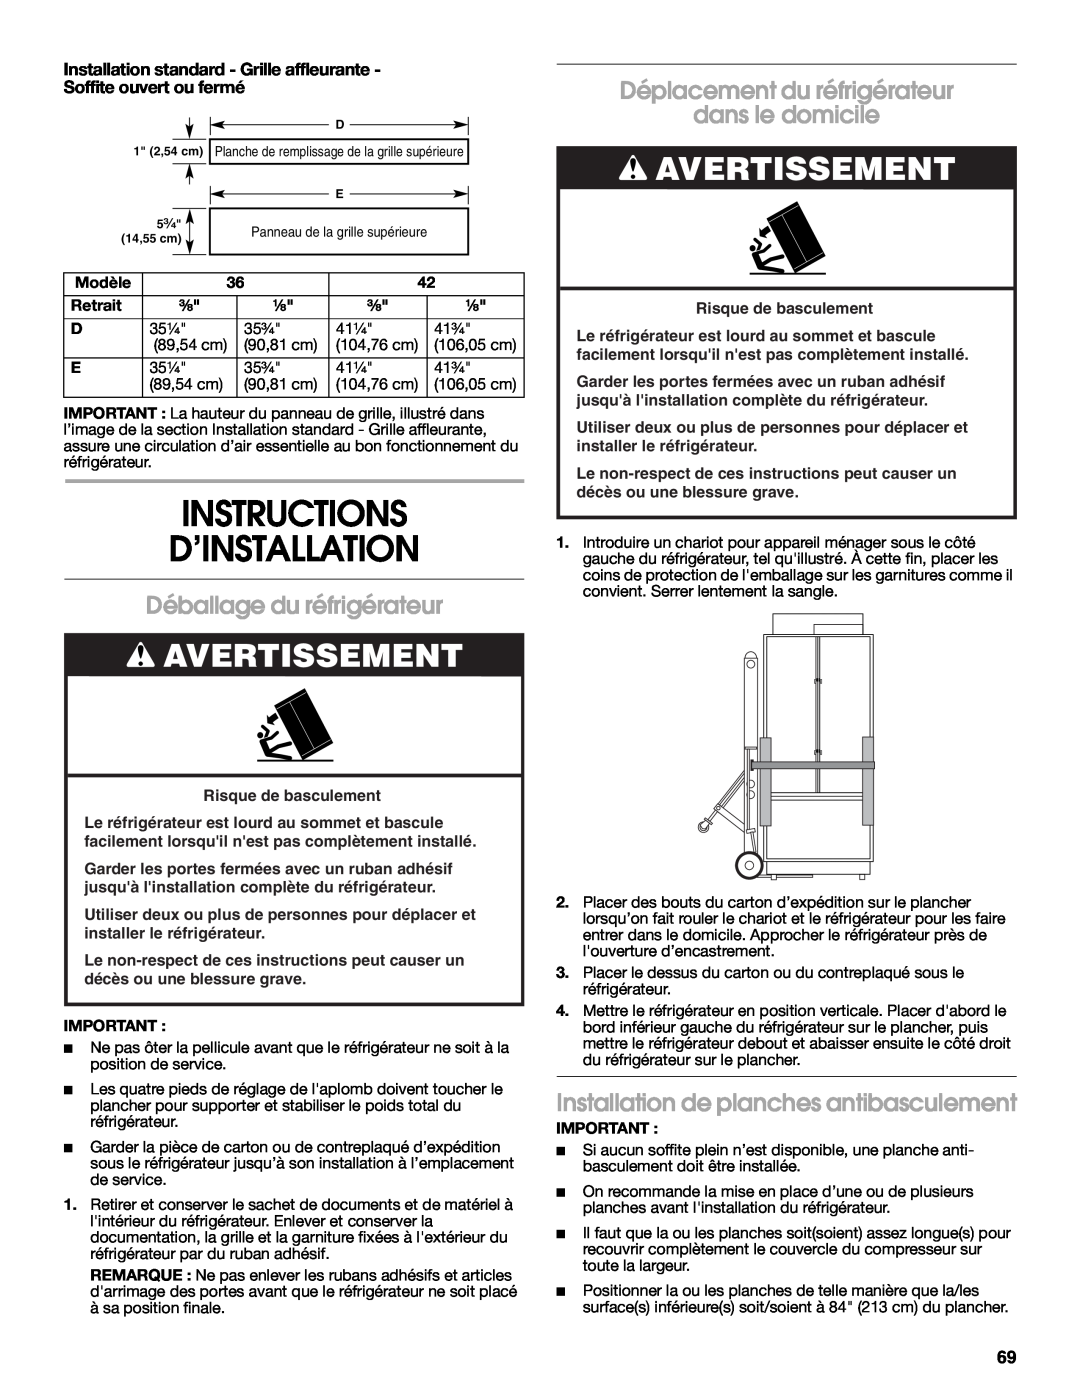 Jenn-Air W10379137A Instructions D’Installation, Déballage du réfrigérateur, Déplacement du réfrigérateur dans le domicile 